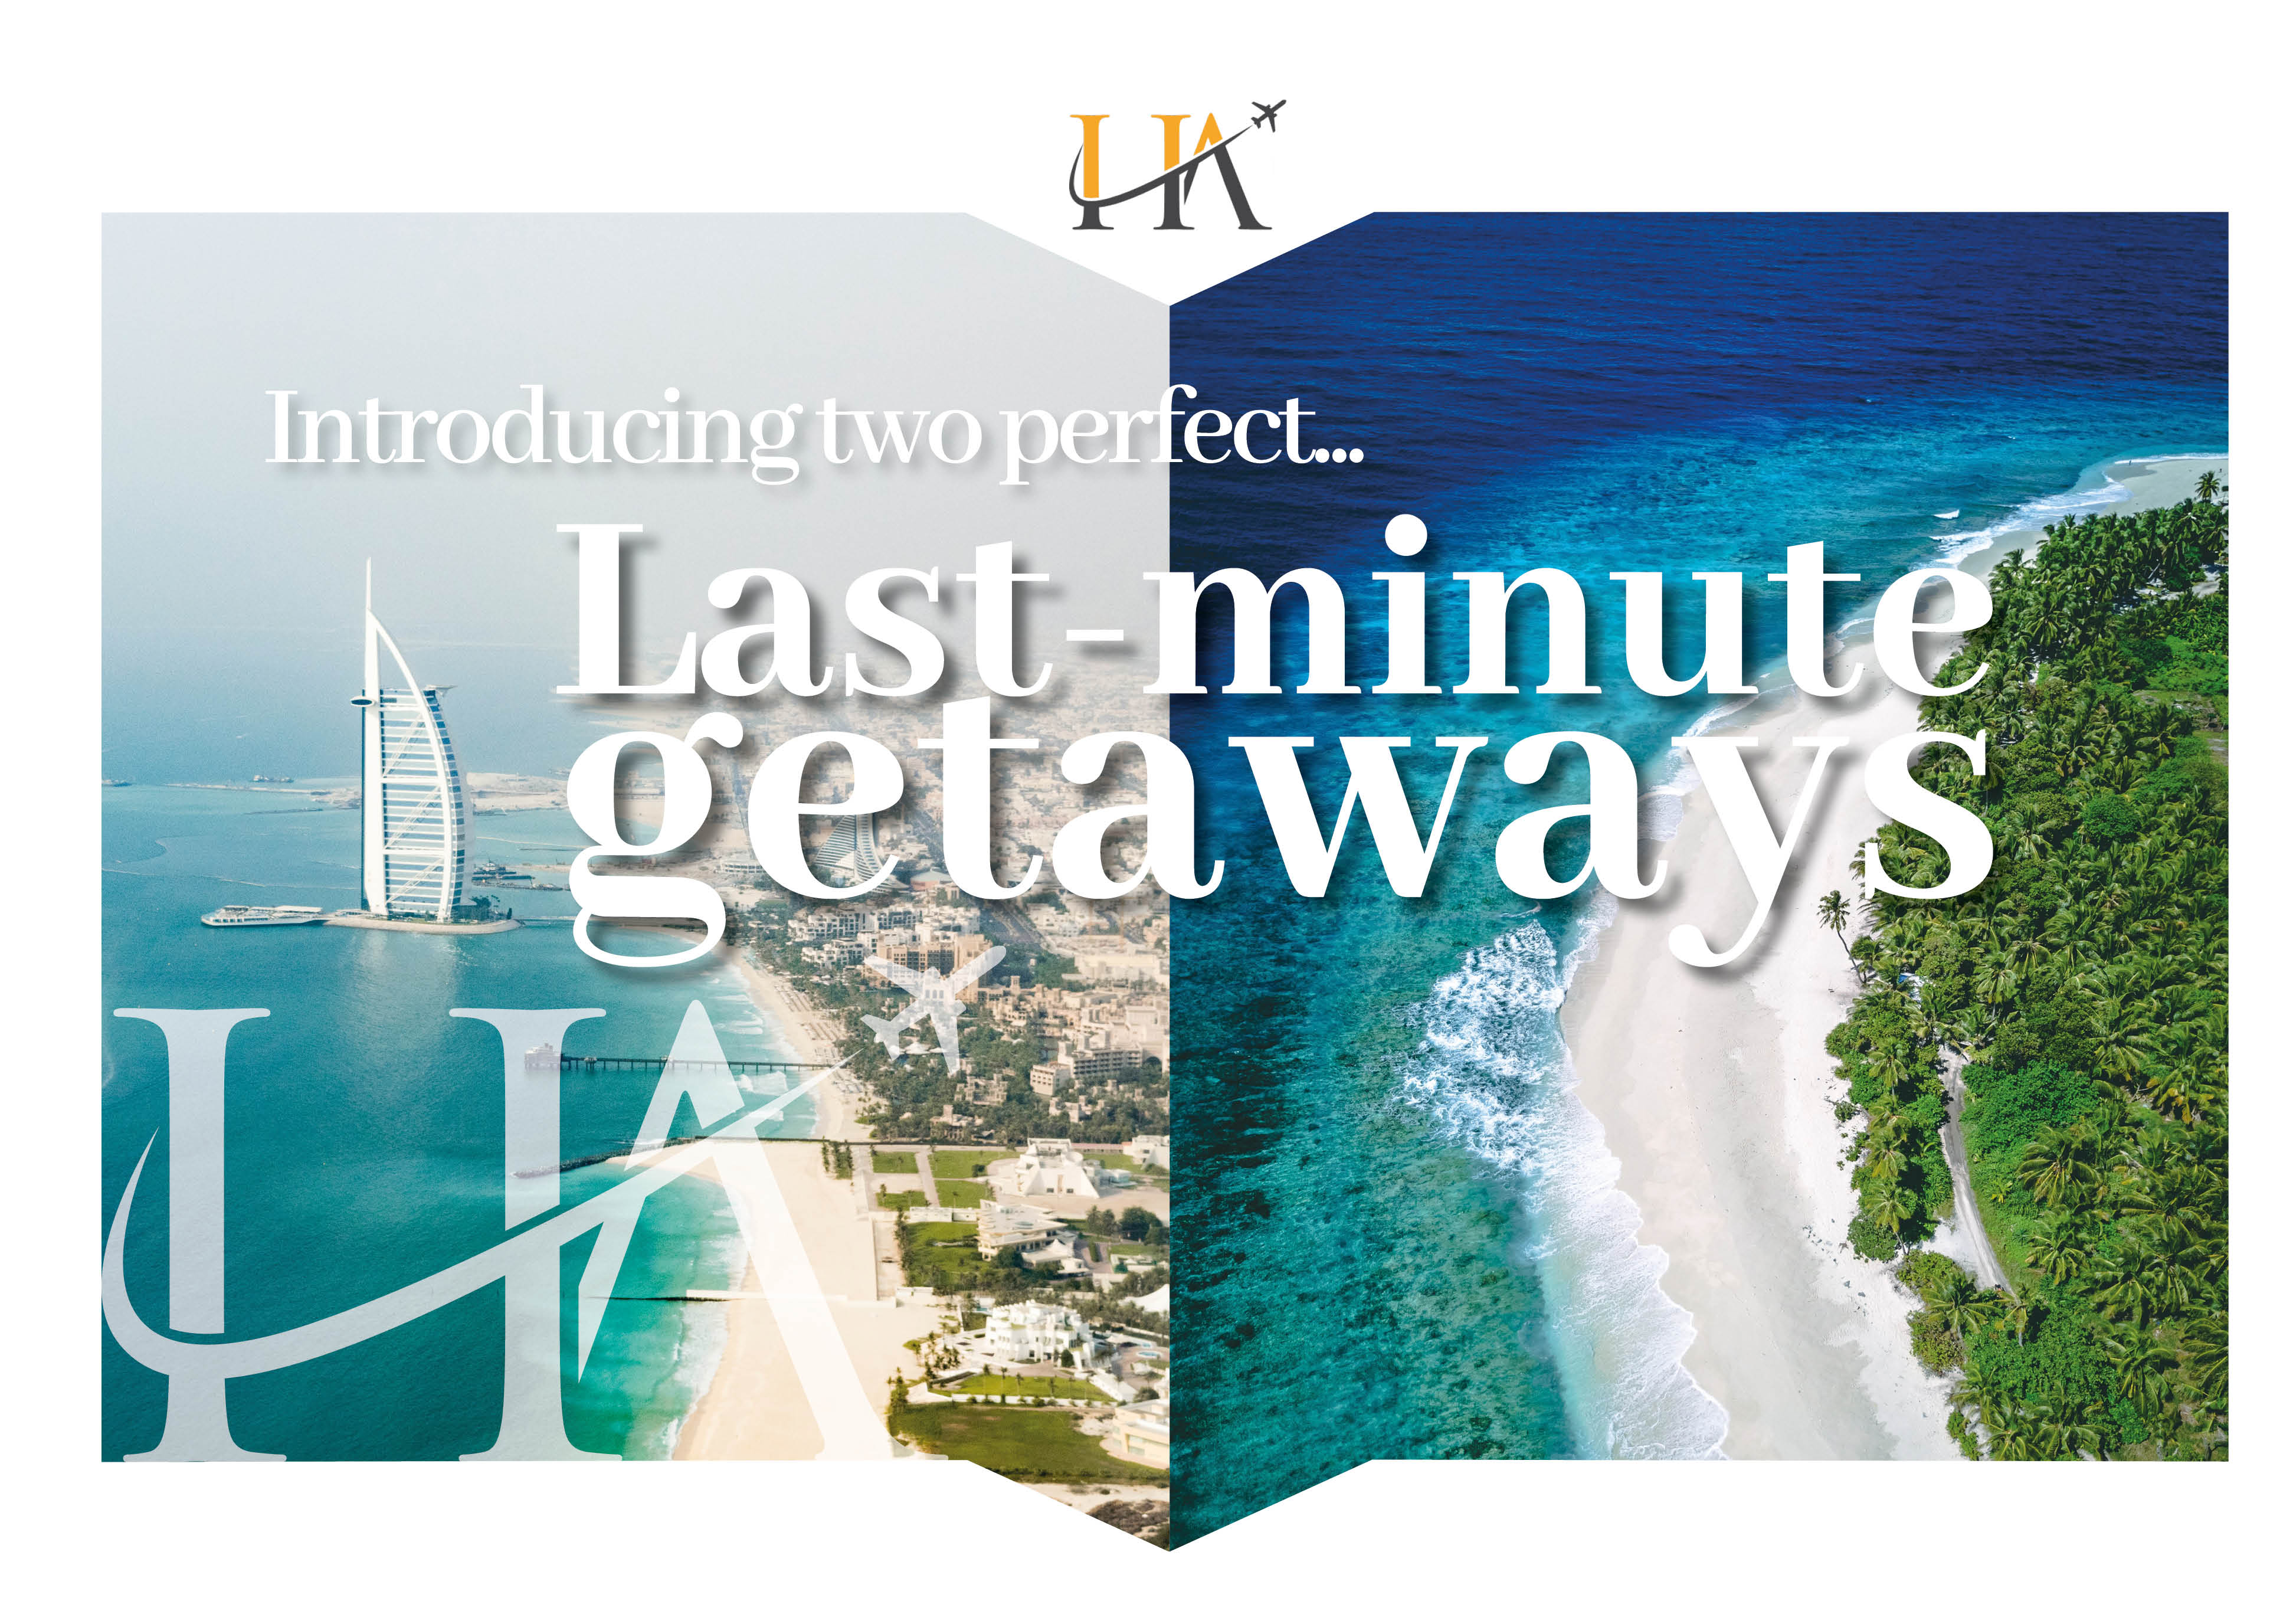 Last minute getaways Maldives and Dubai